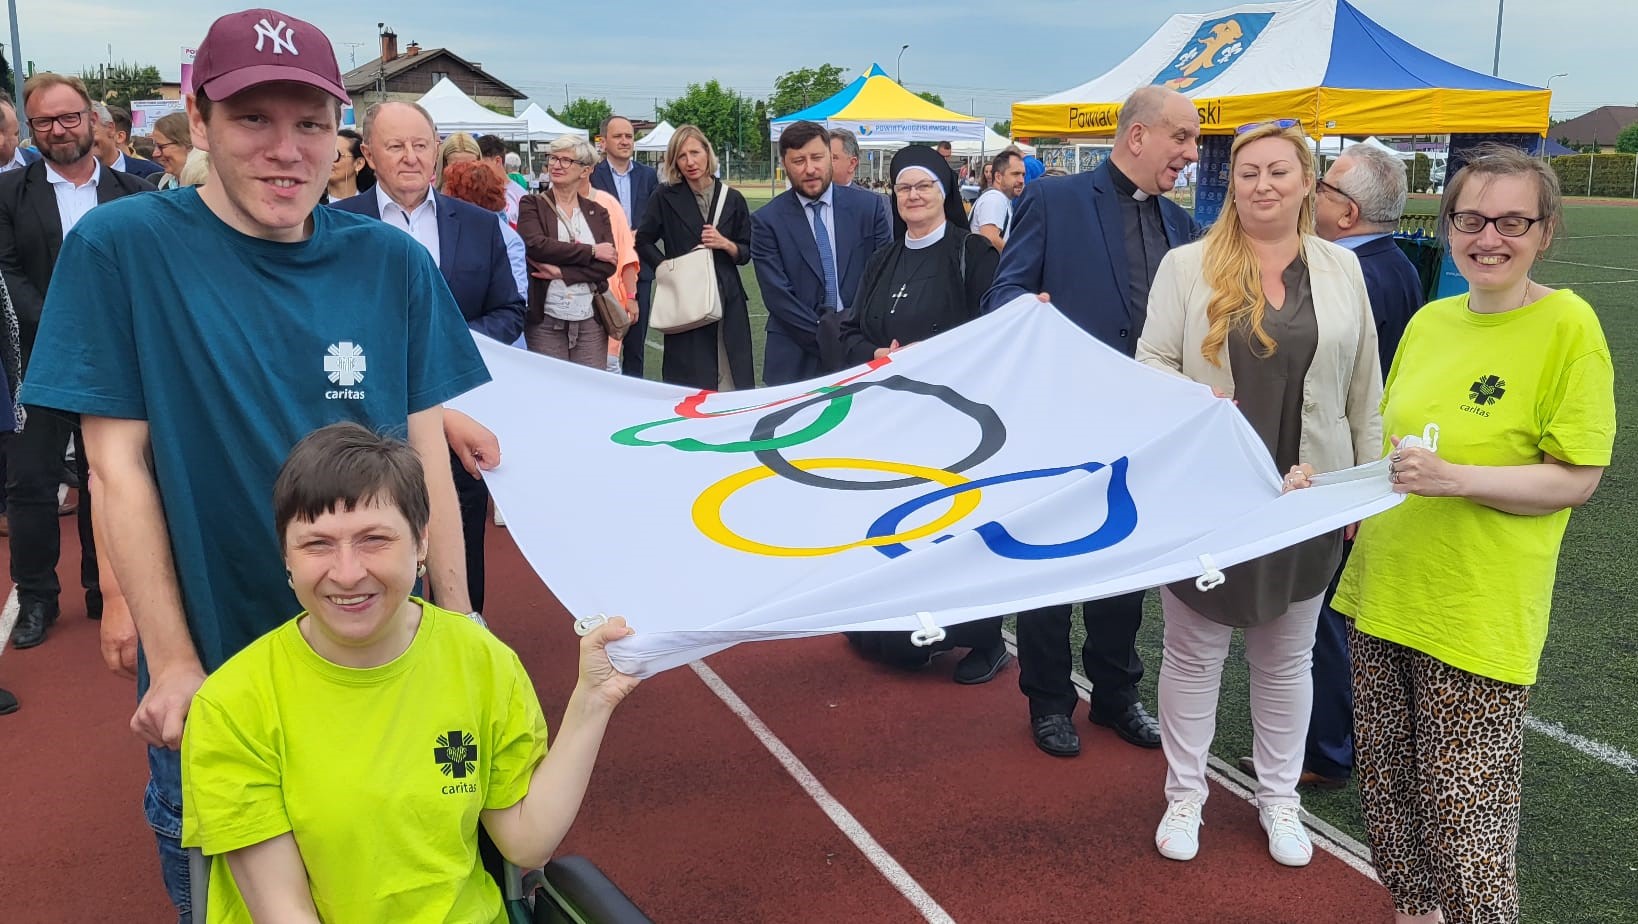 Na zdjęciu widać osoby stojące na bieżni trzymające flagę olimpijską. W tle stadion i biało-żółto-niebieskie namioty.